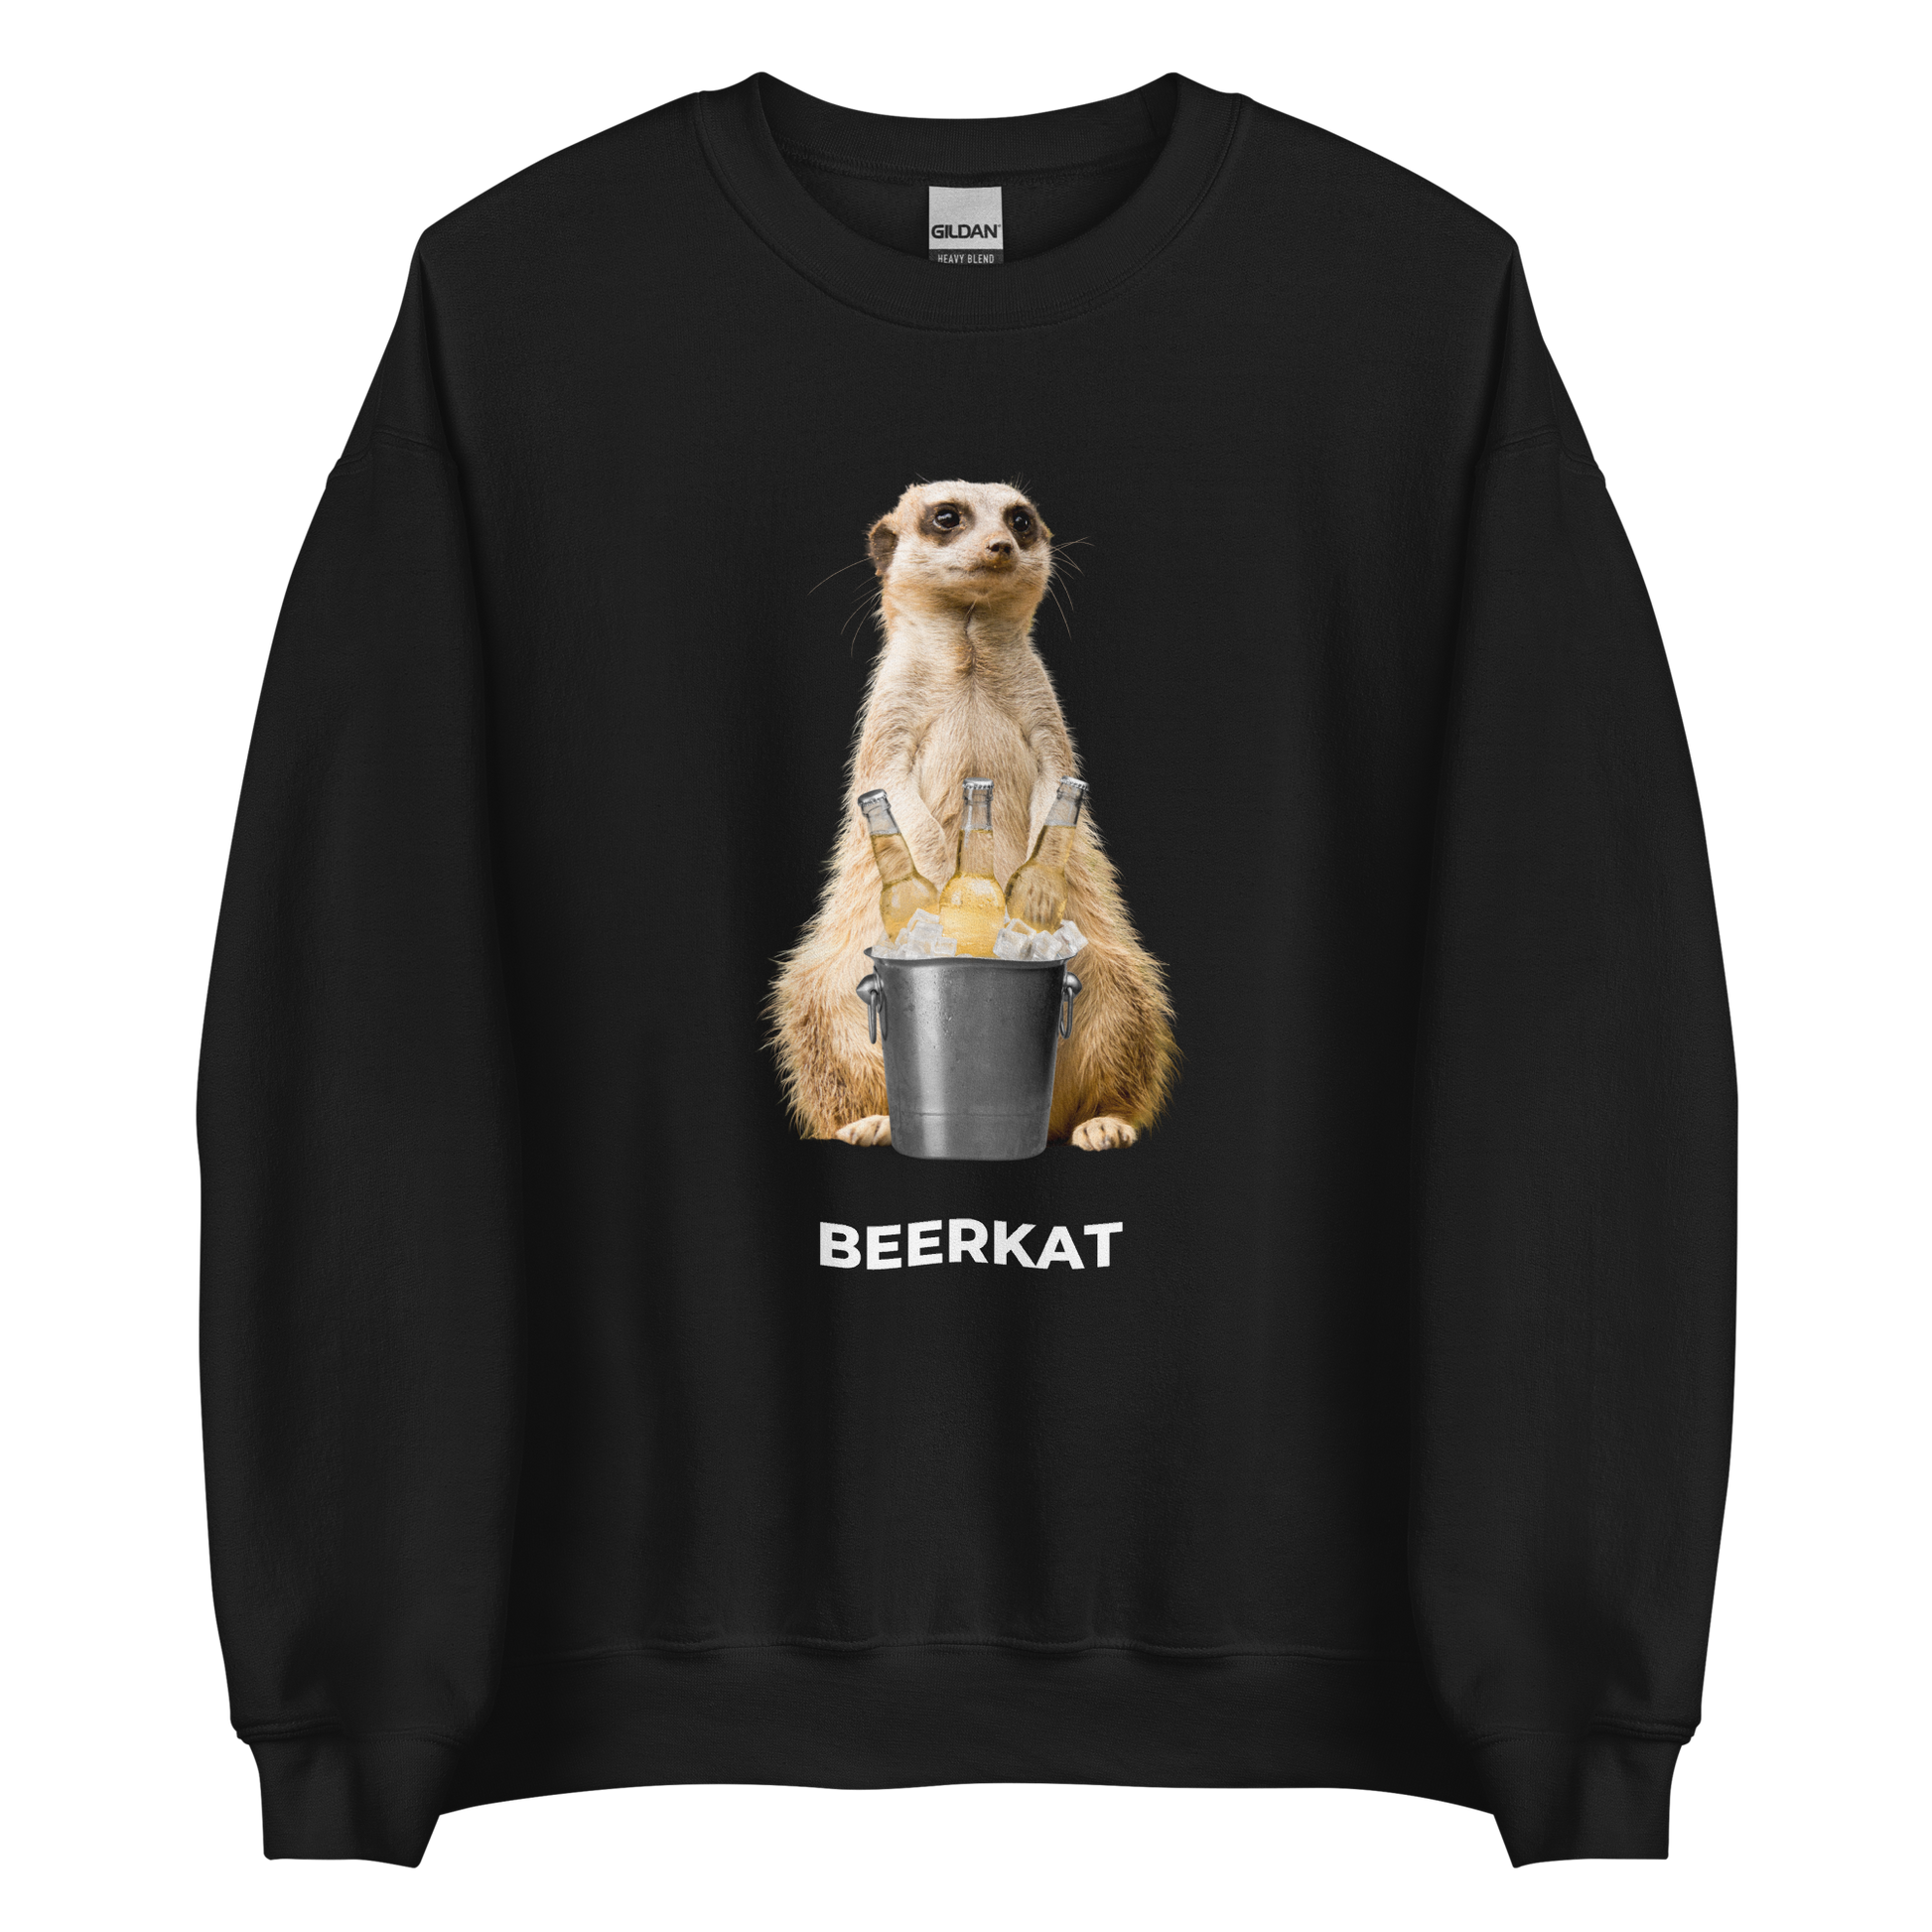 Black Meerkat Sweatshirt featuring a hilarious Beerkat graphic on the chest - Funny Graphic Meerkat Sweatshirts - Boozy Fox